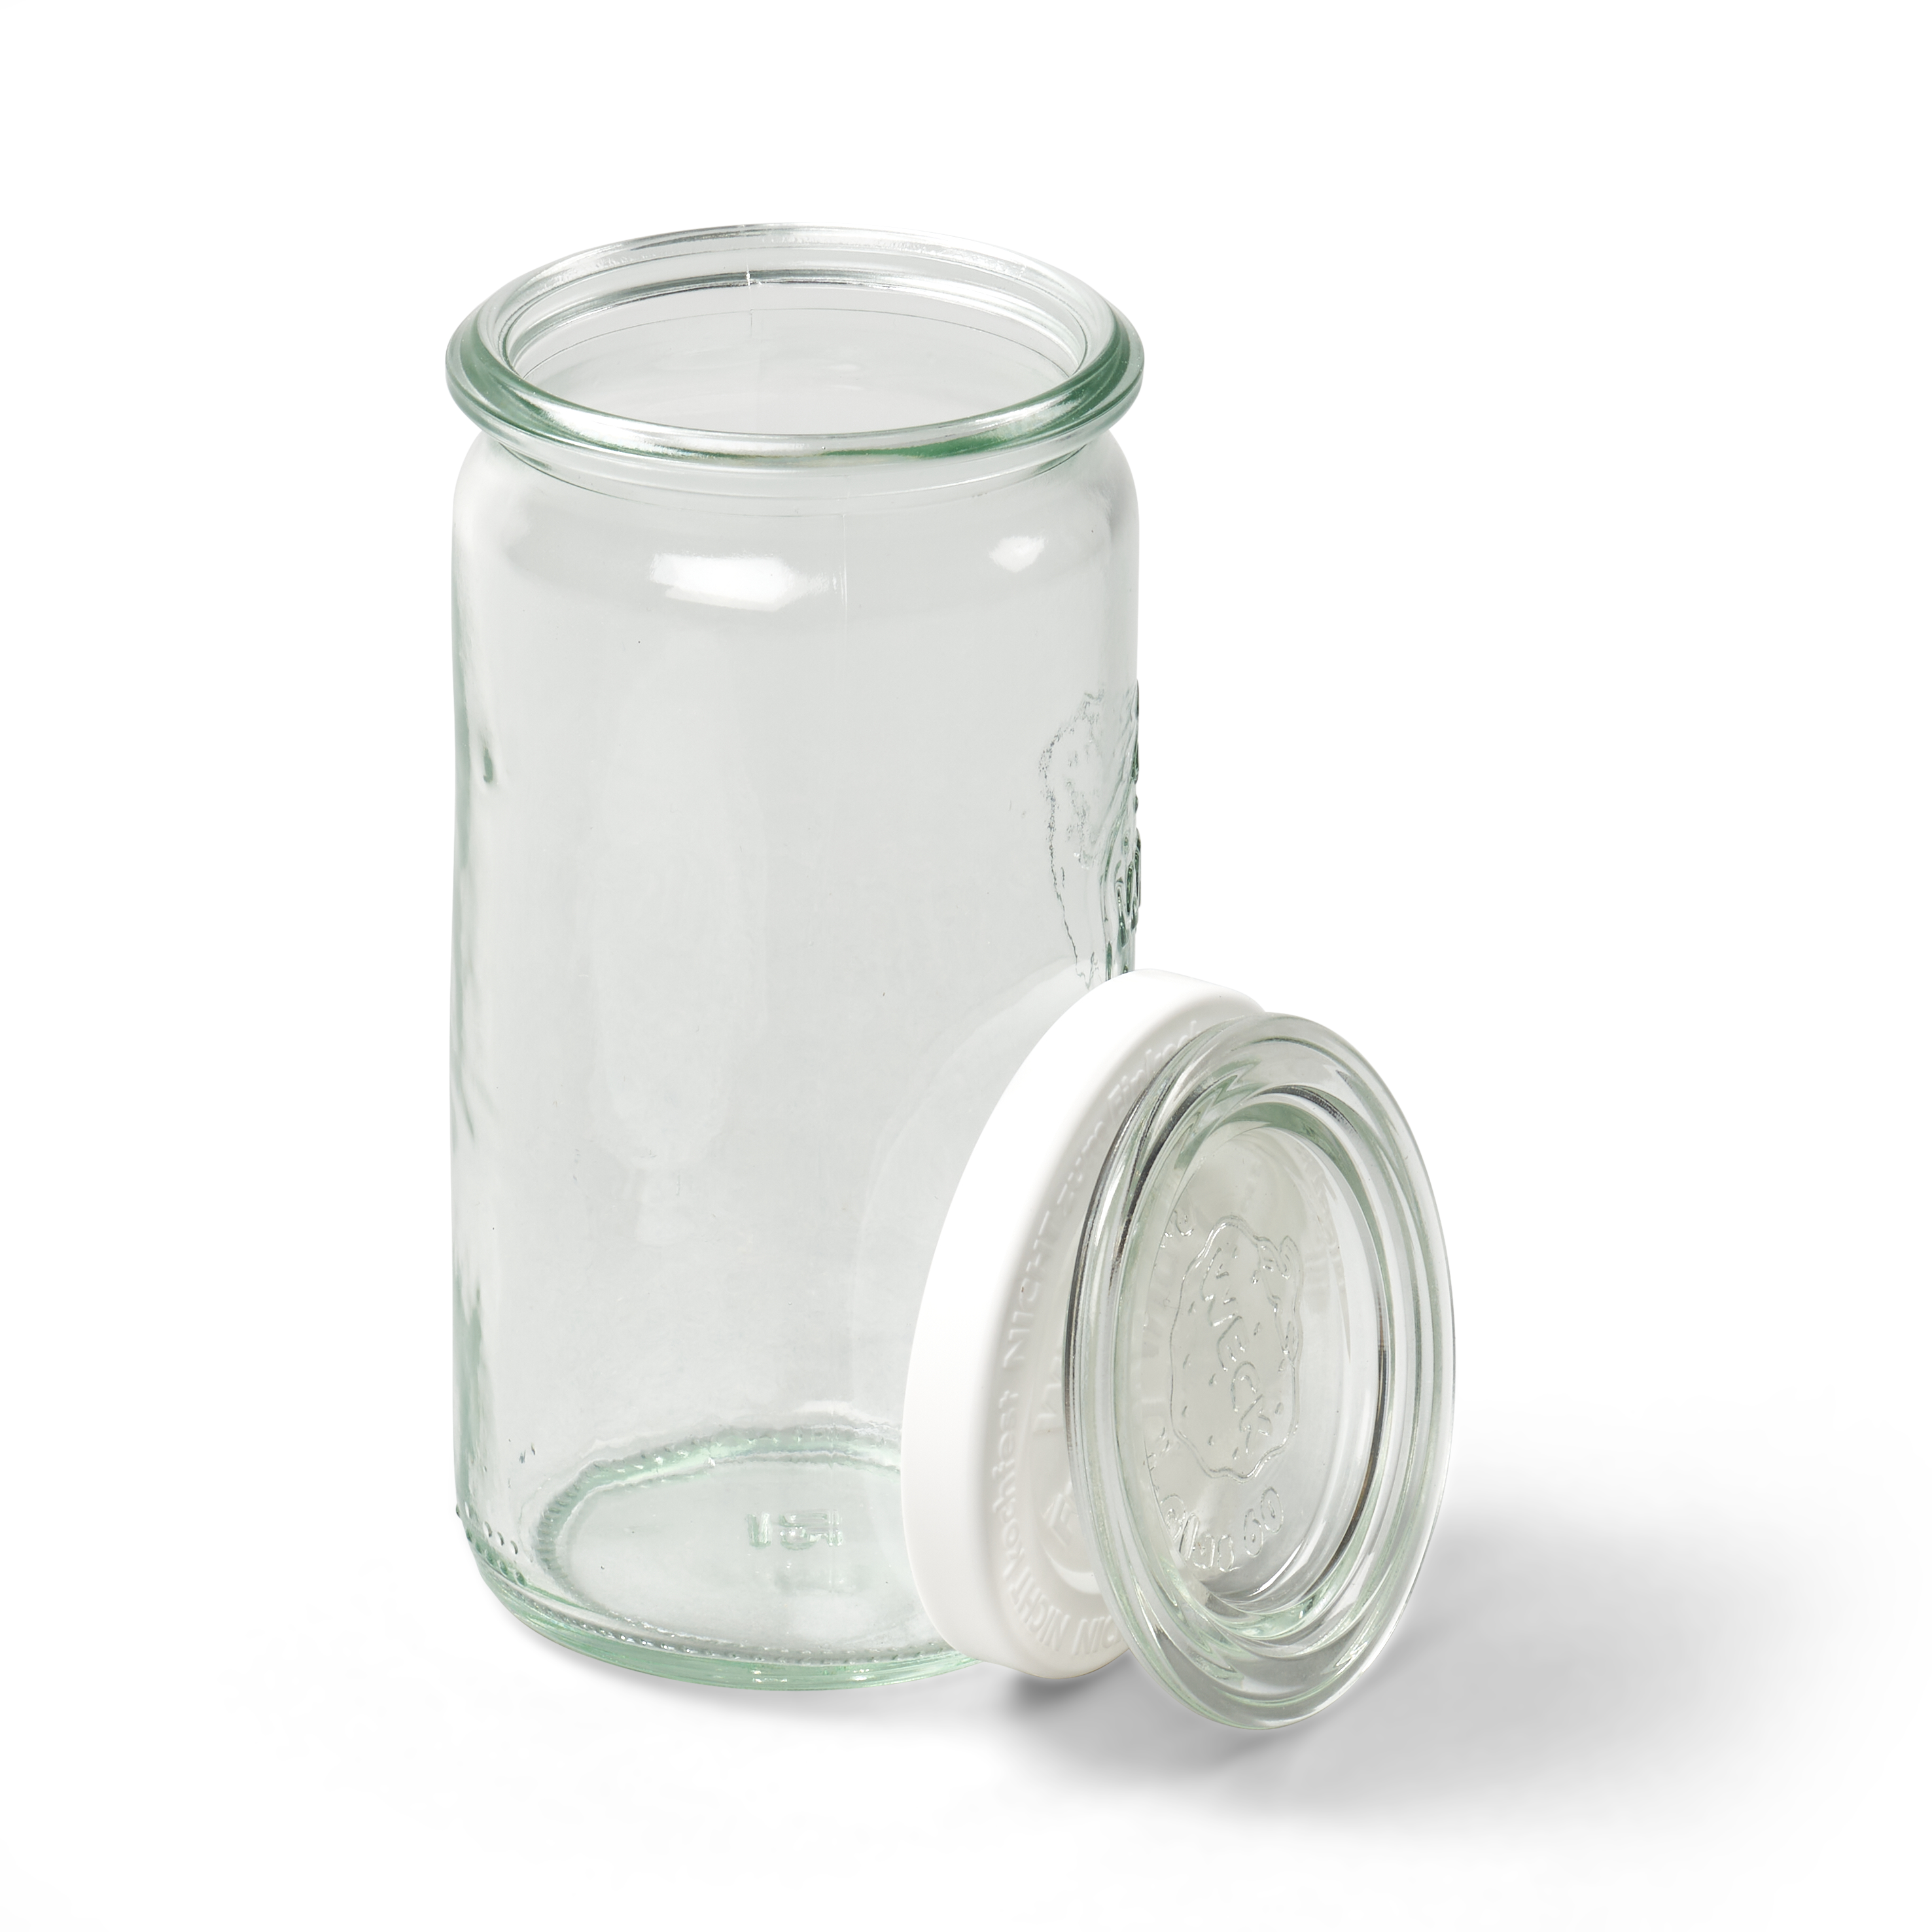 Sauerteig & Lievito Madre Glas, klein